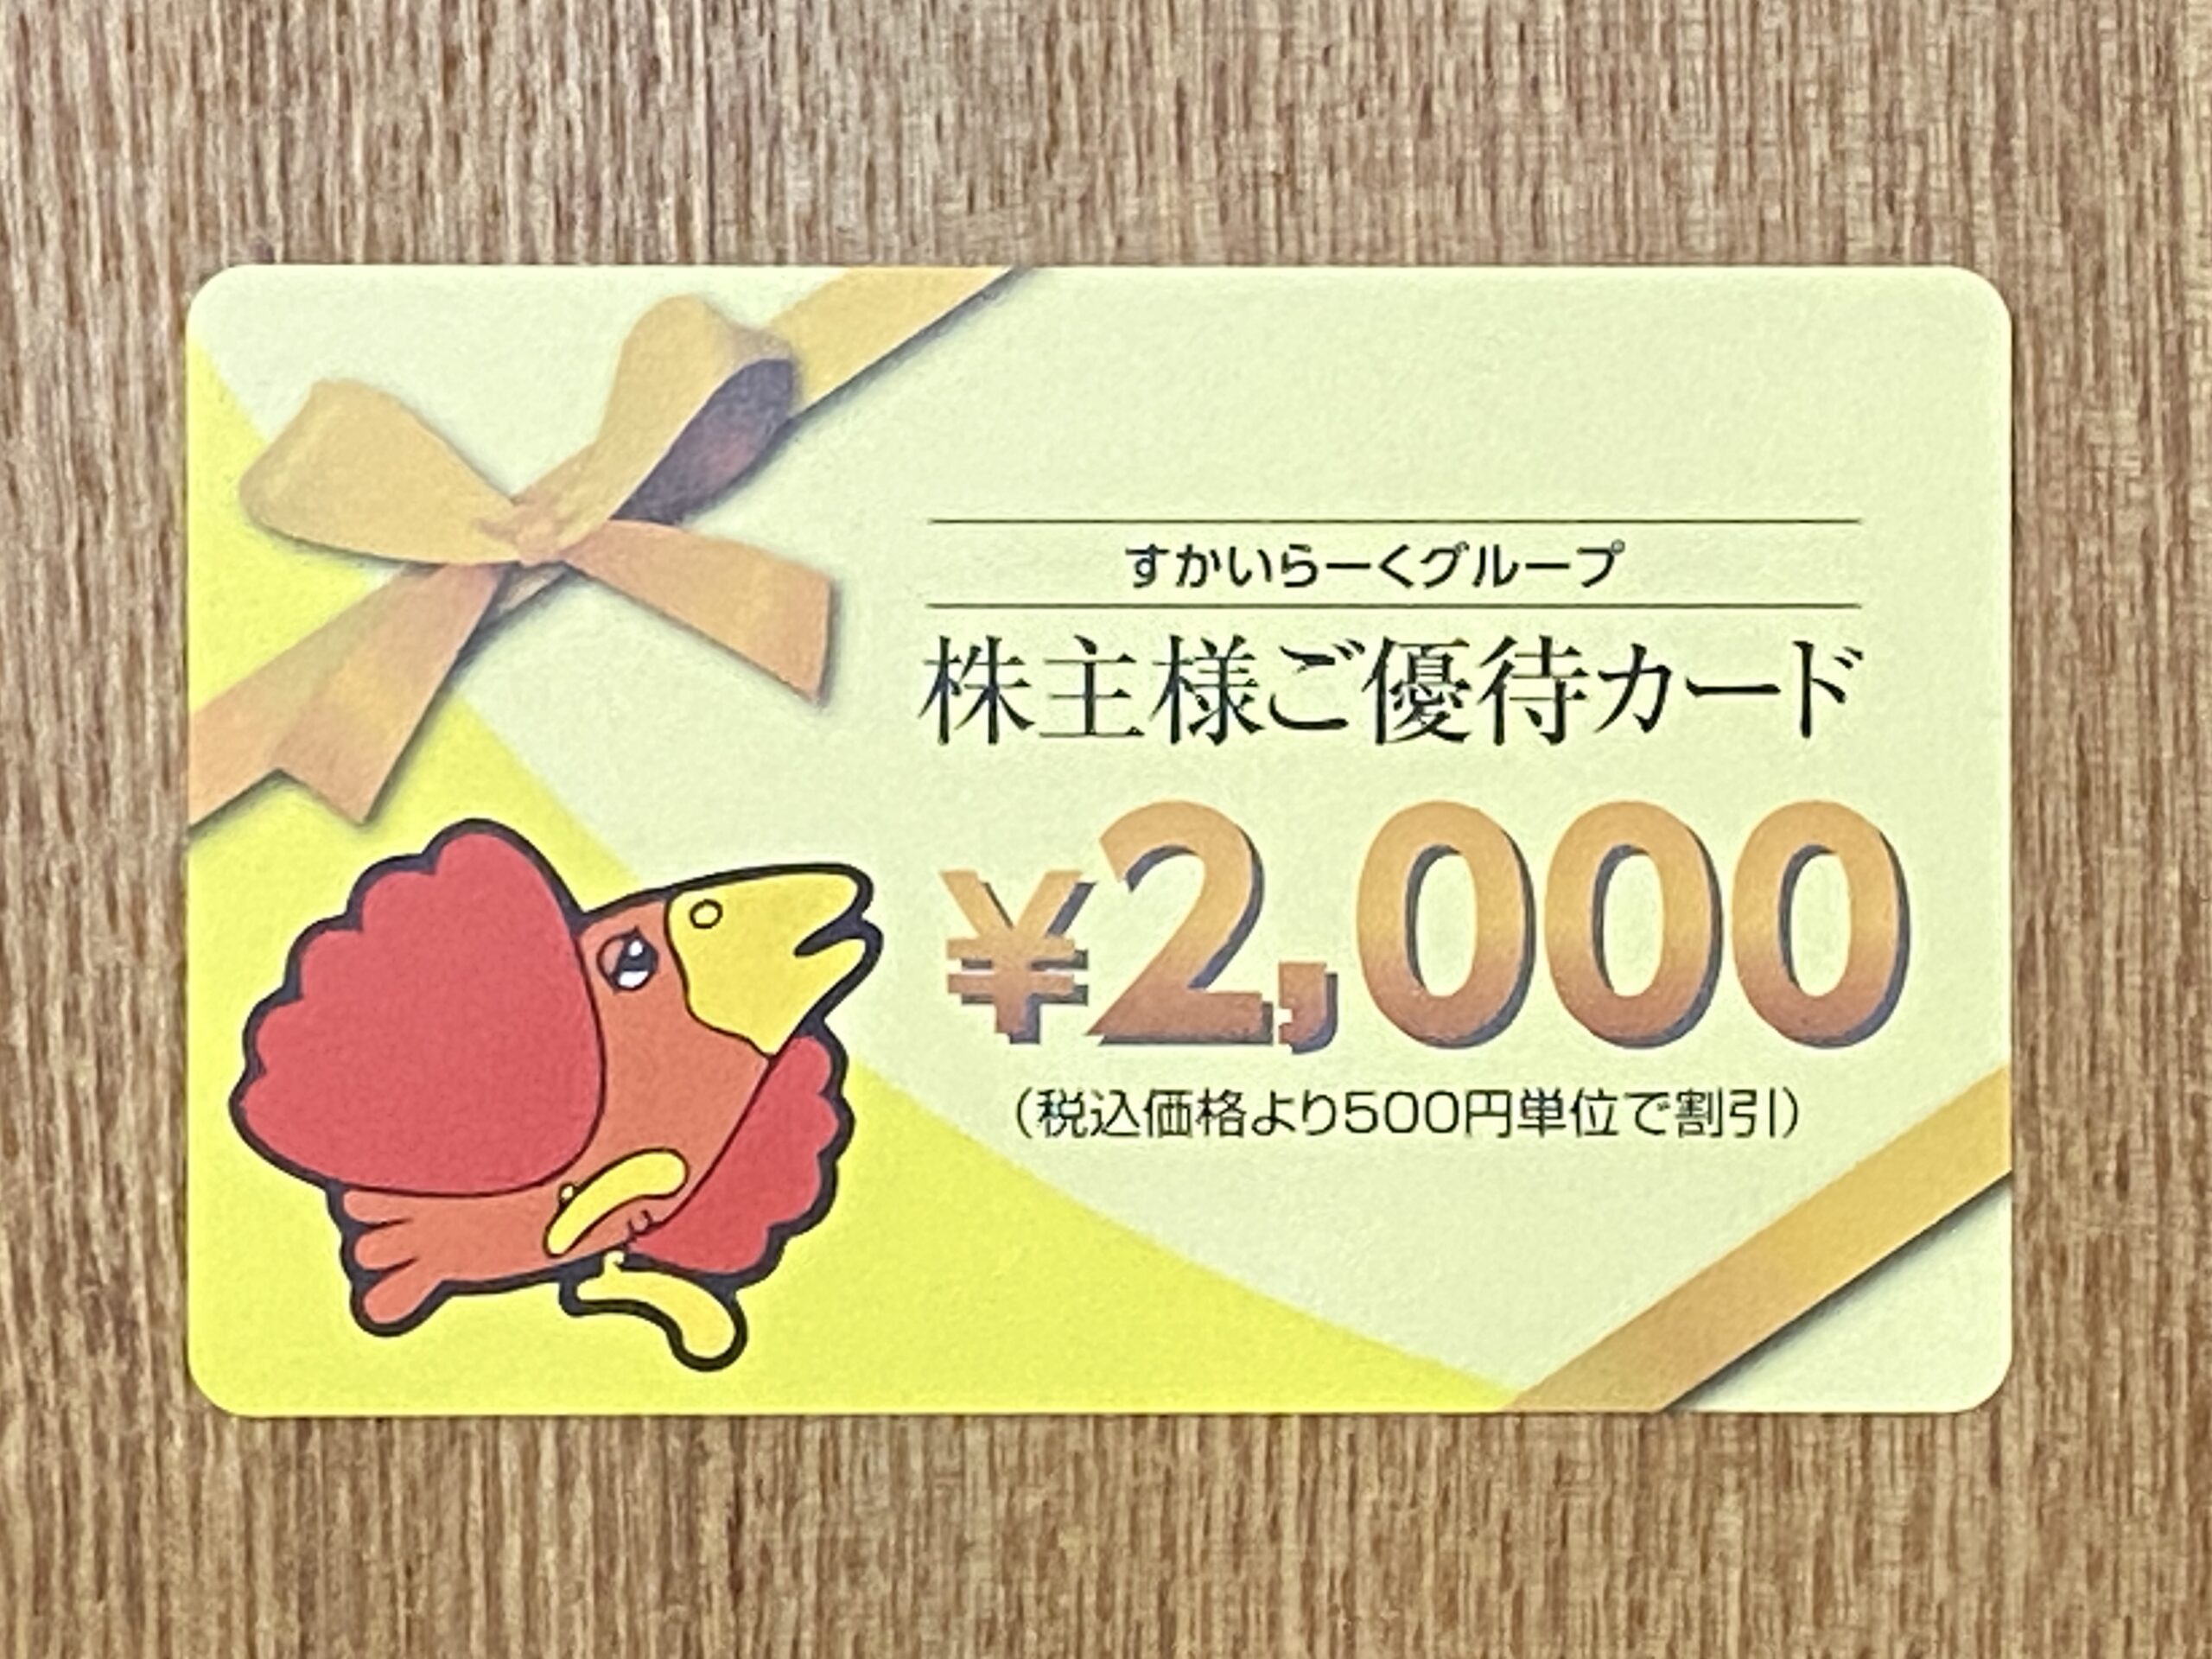 【株主優待】すかいらーくグループ 優待券 2,000円分